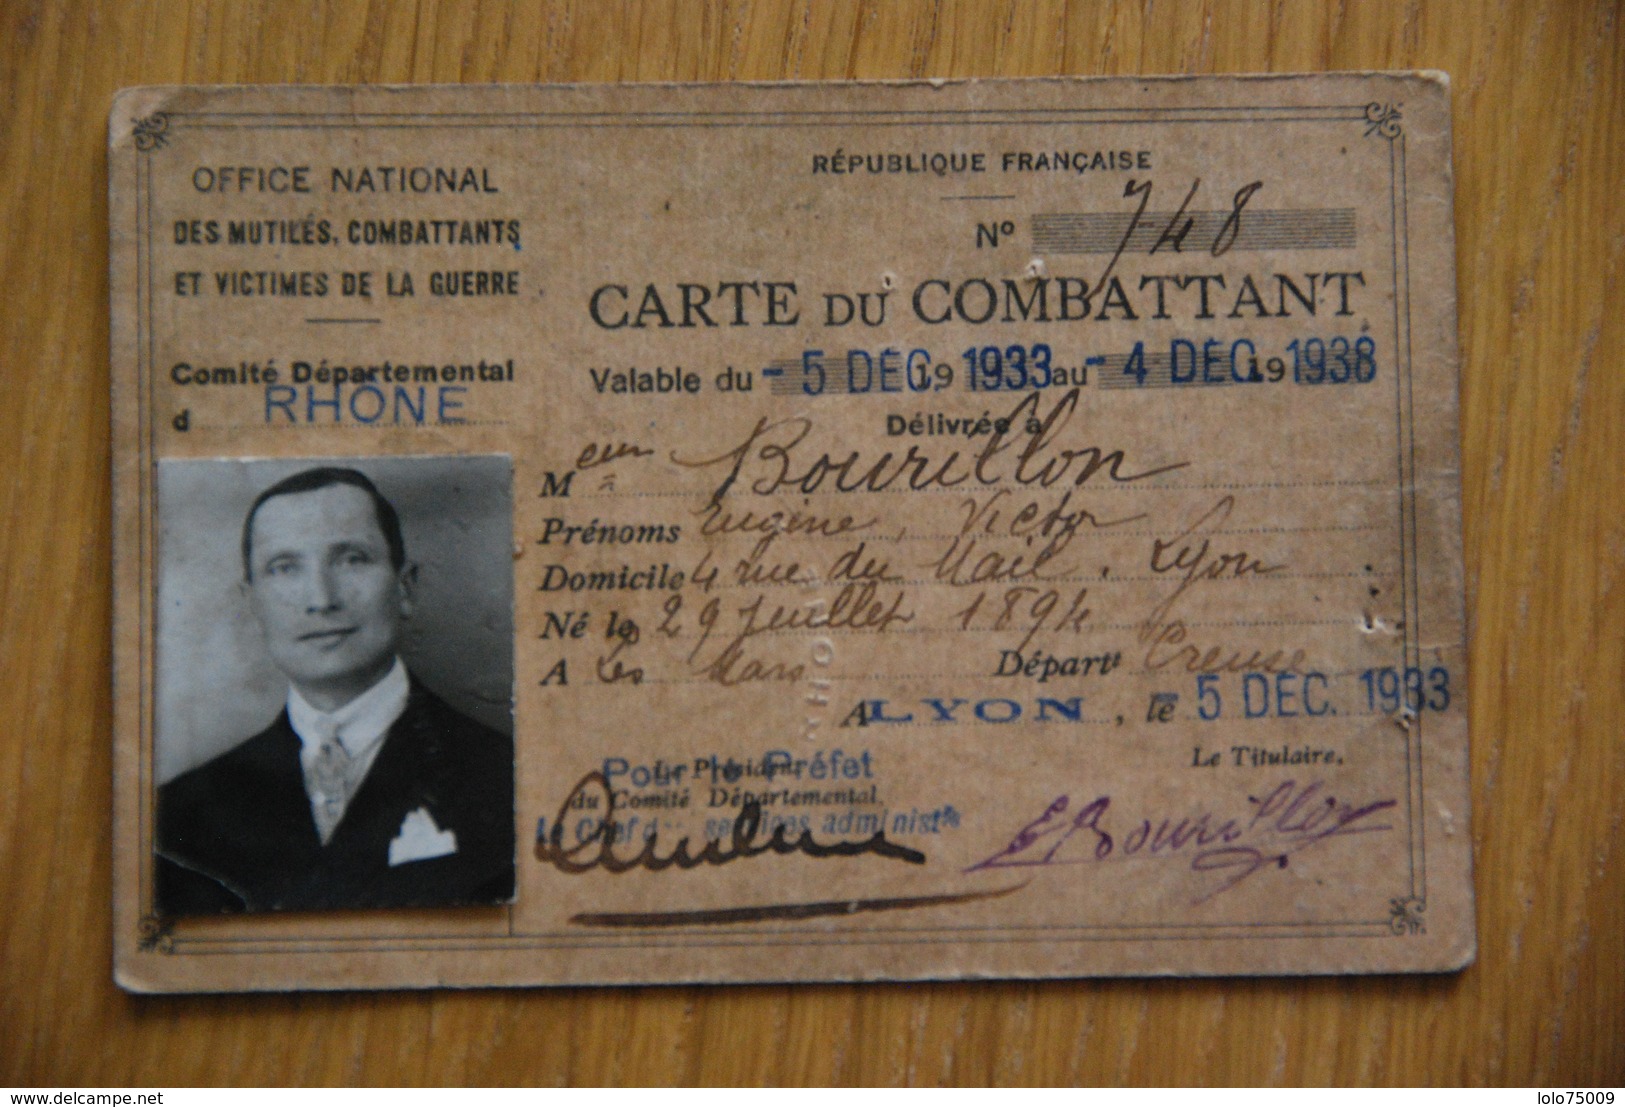 Carte Nominative - Carte De Combattant Lyon Rhone 1933 - Documents Historiques